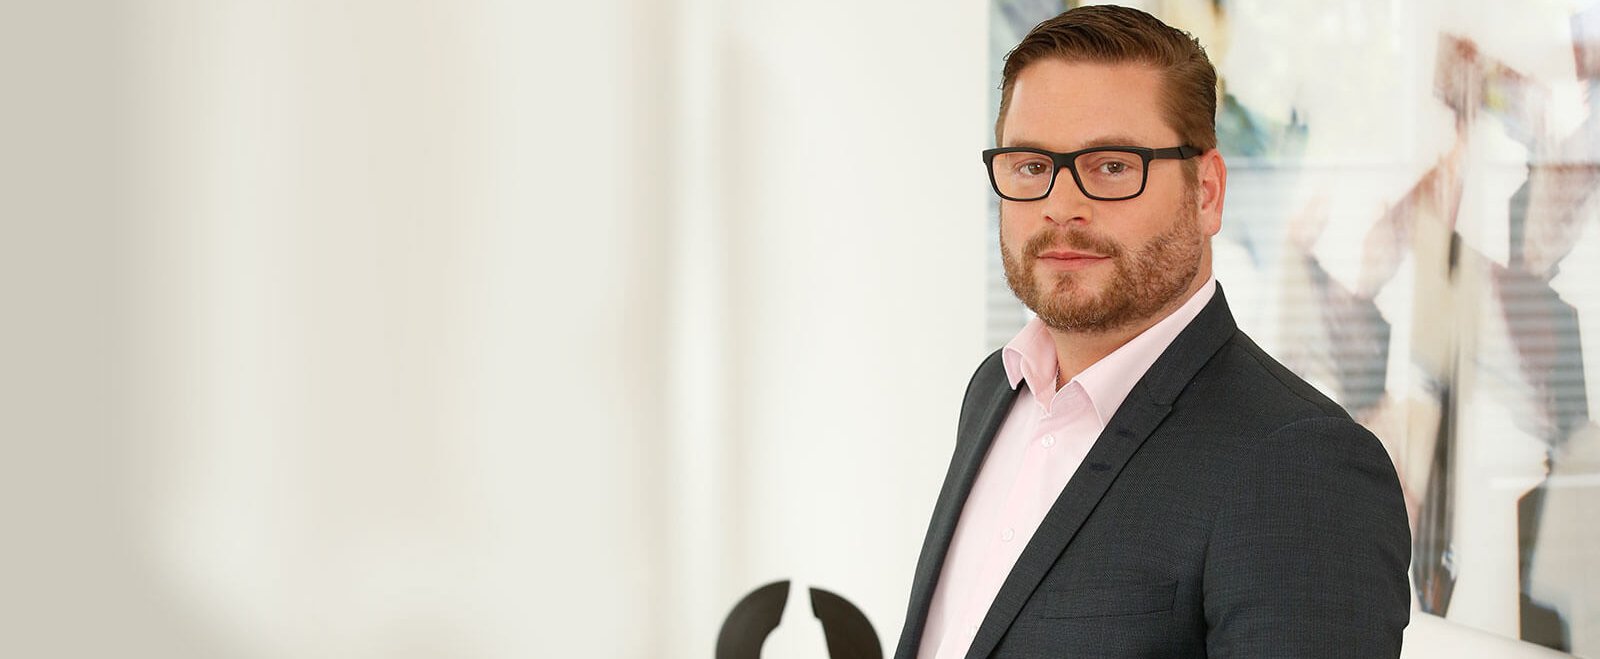 Steffen Hort, geschäftsführender Gesellschafter der Steuerkanzlei Maisenbacher Hort + Partner, im Interview zu New Work in der Steuerbranche